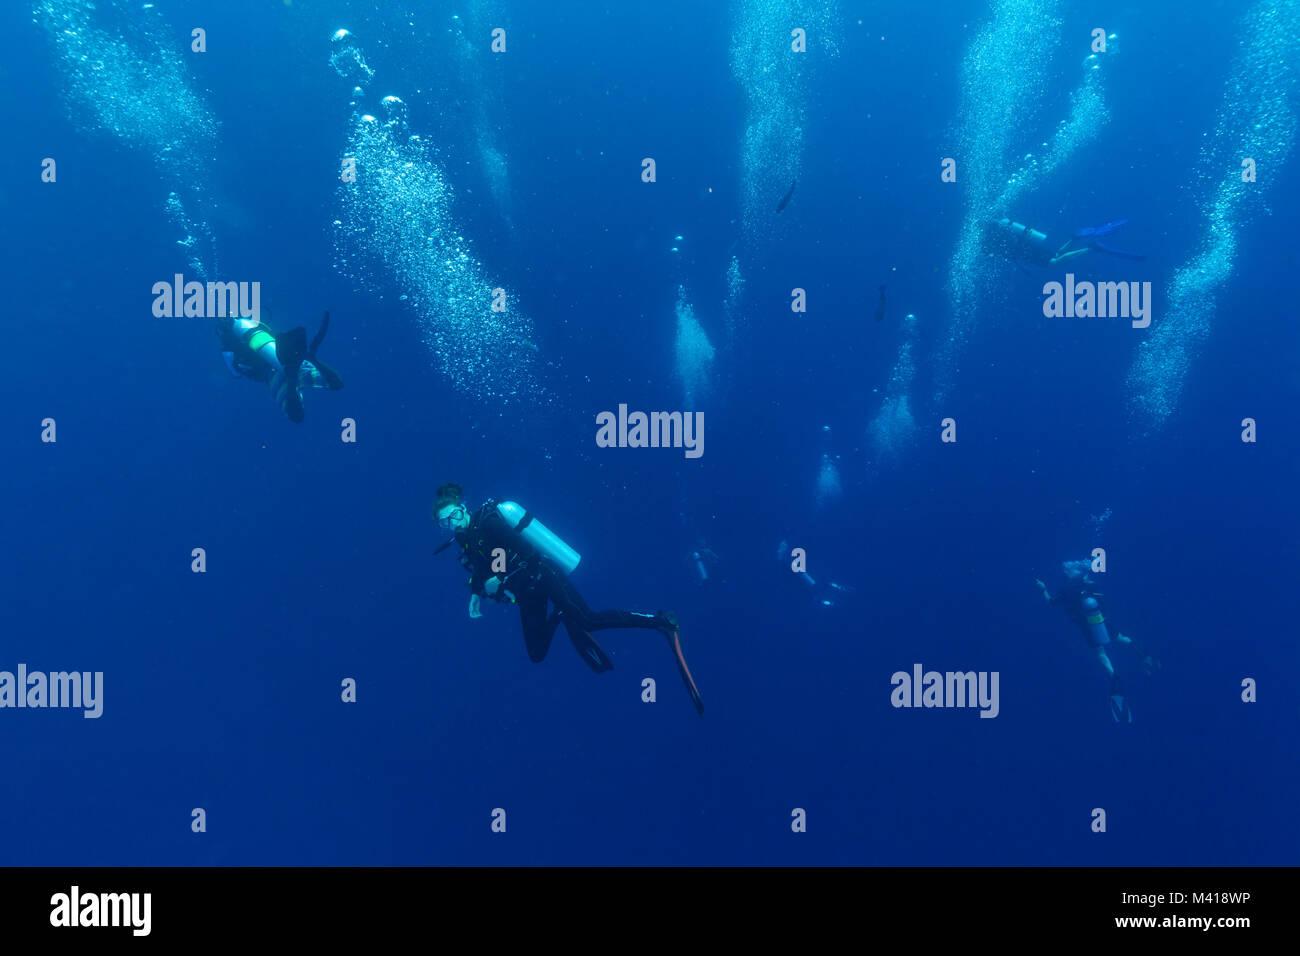 Gruppo di subacquei scendono in profondità, fotografia subacquea Foto Stock